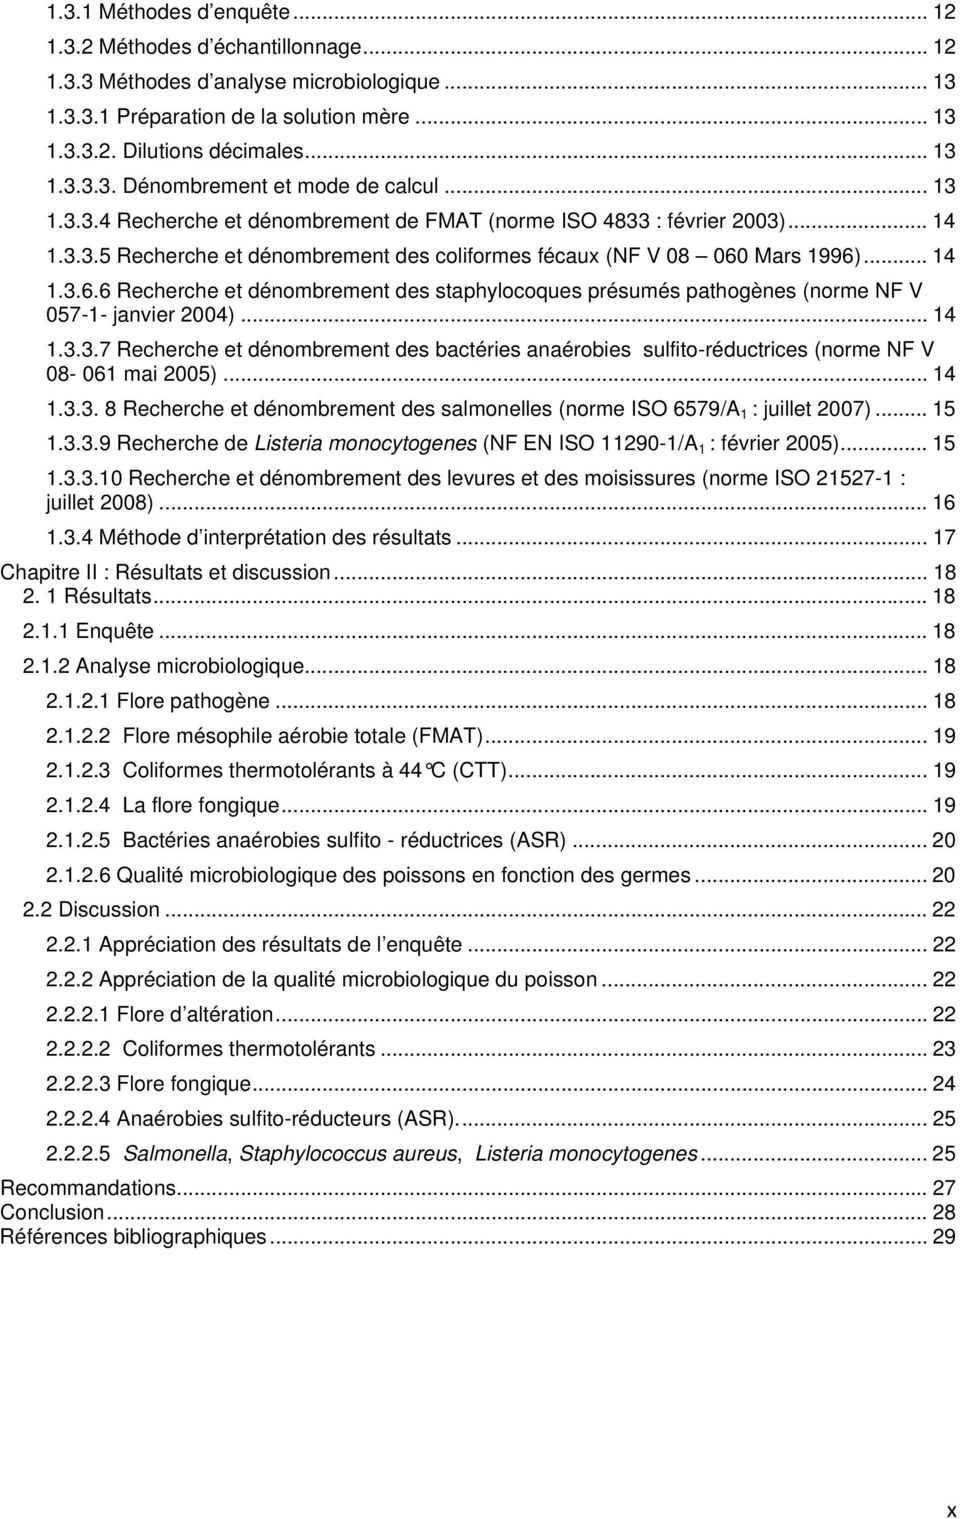 Mars 1996)... 14 1.3.6.6 Recherche et dénombrement des staphylocoques présumés pathogènes (norme NF V 057-1- janvier 2004)... 14 1.3.3.7 Recherche et dénombrement des bactéries anaérobies sulfito-réductrices (norme NF V 08-061 mai 2005).